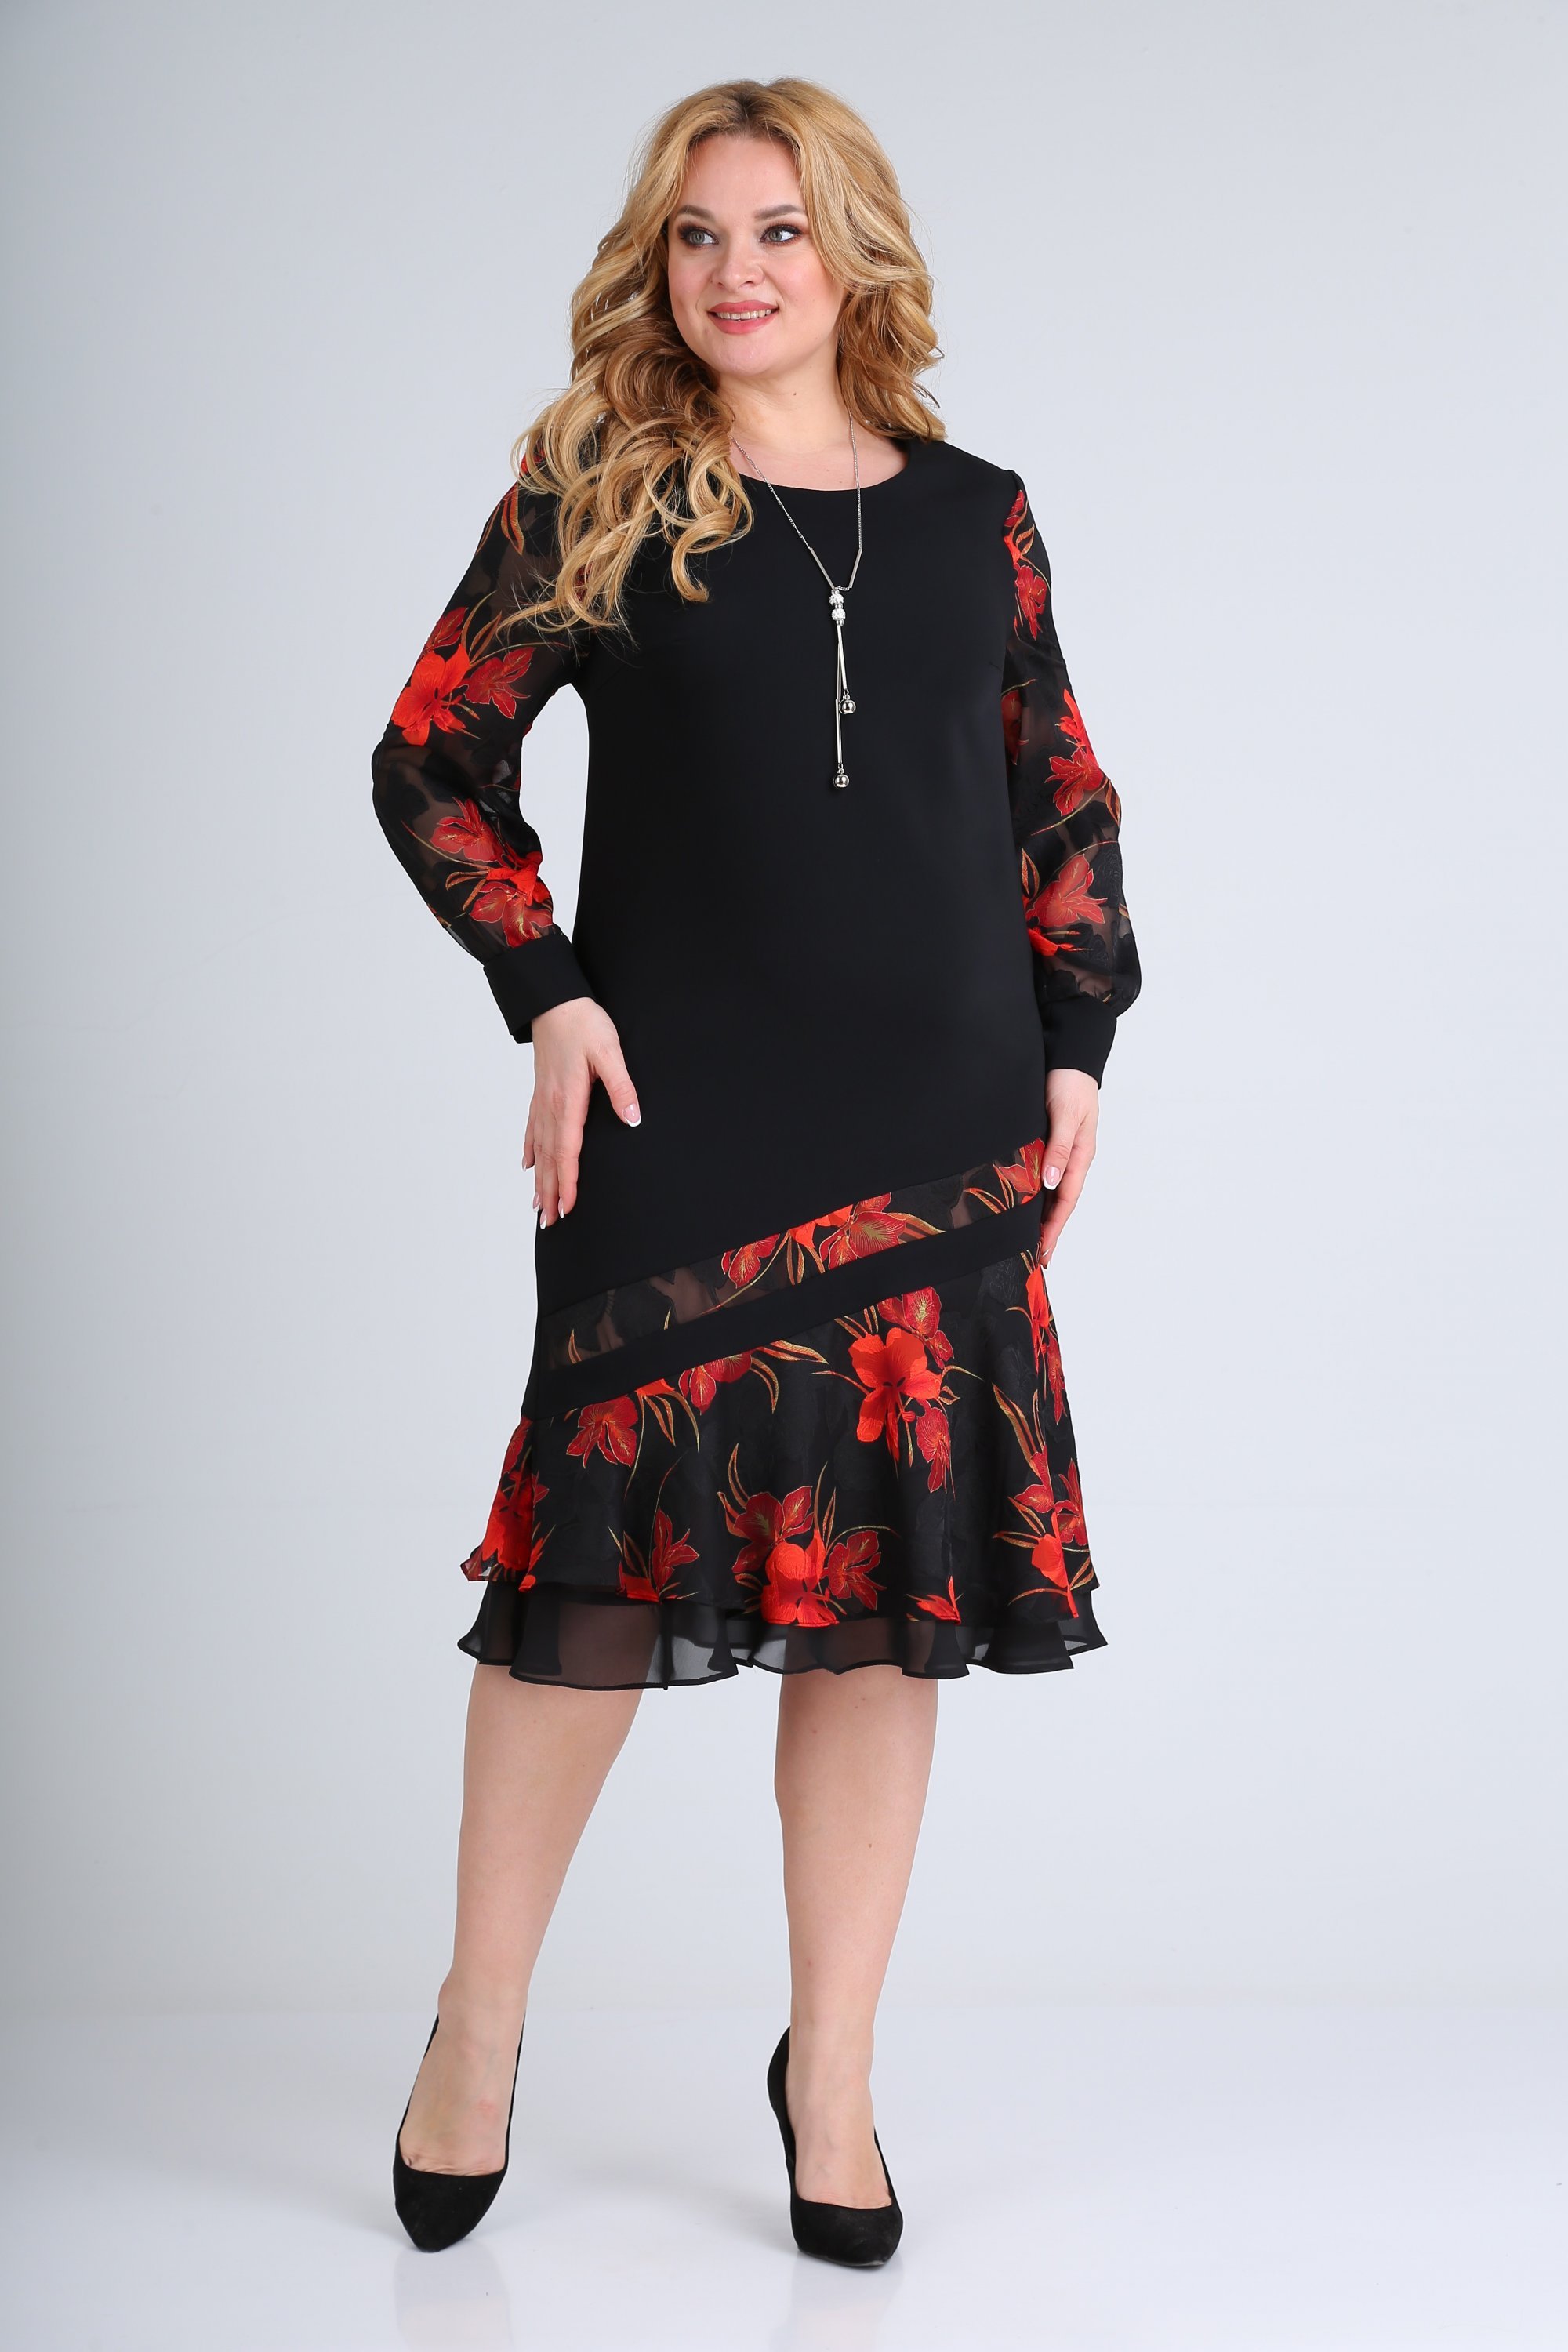 Платье 2211 черный красный Moda-Versal